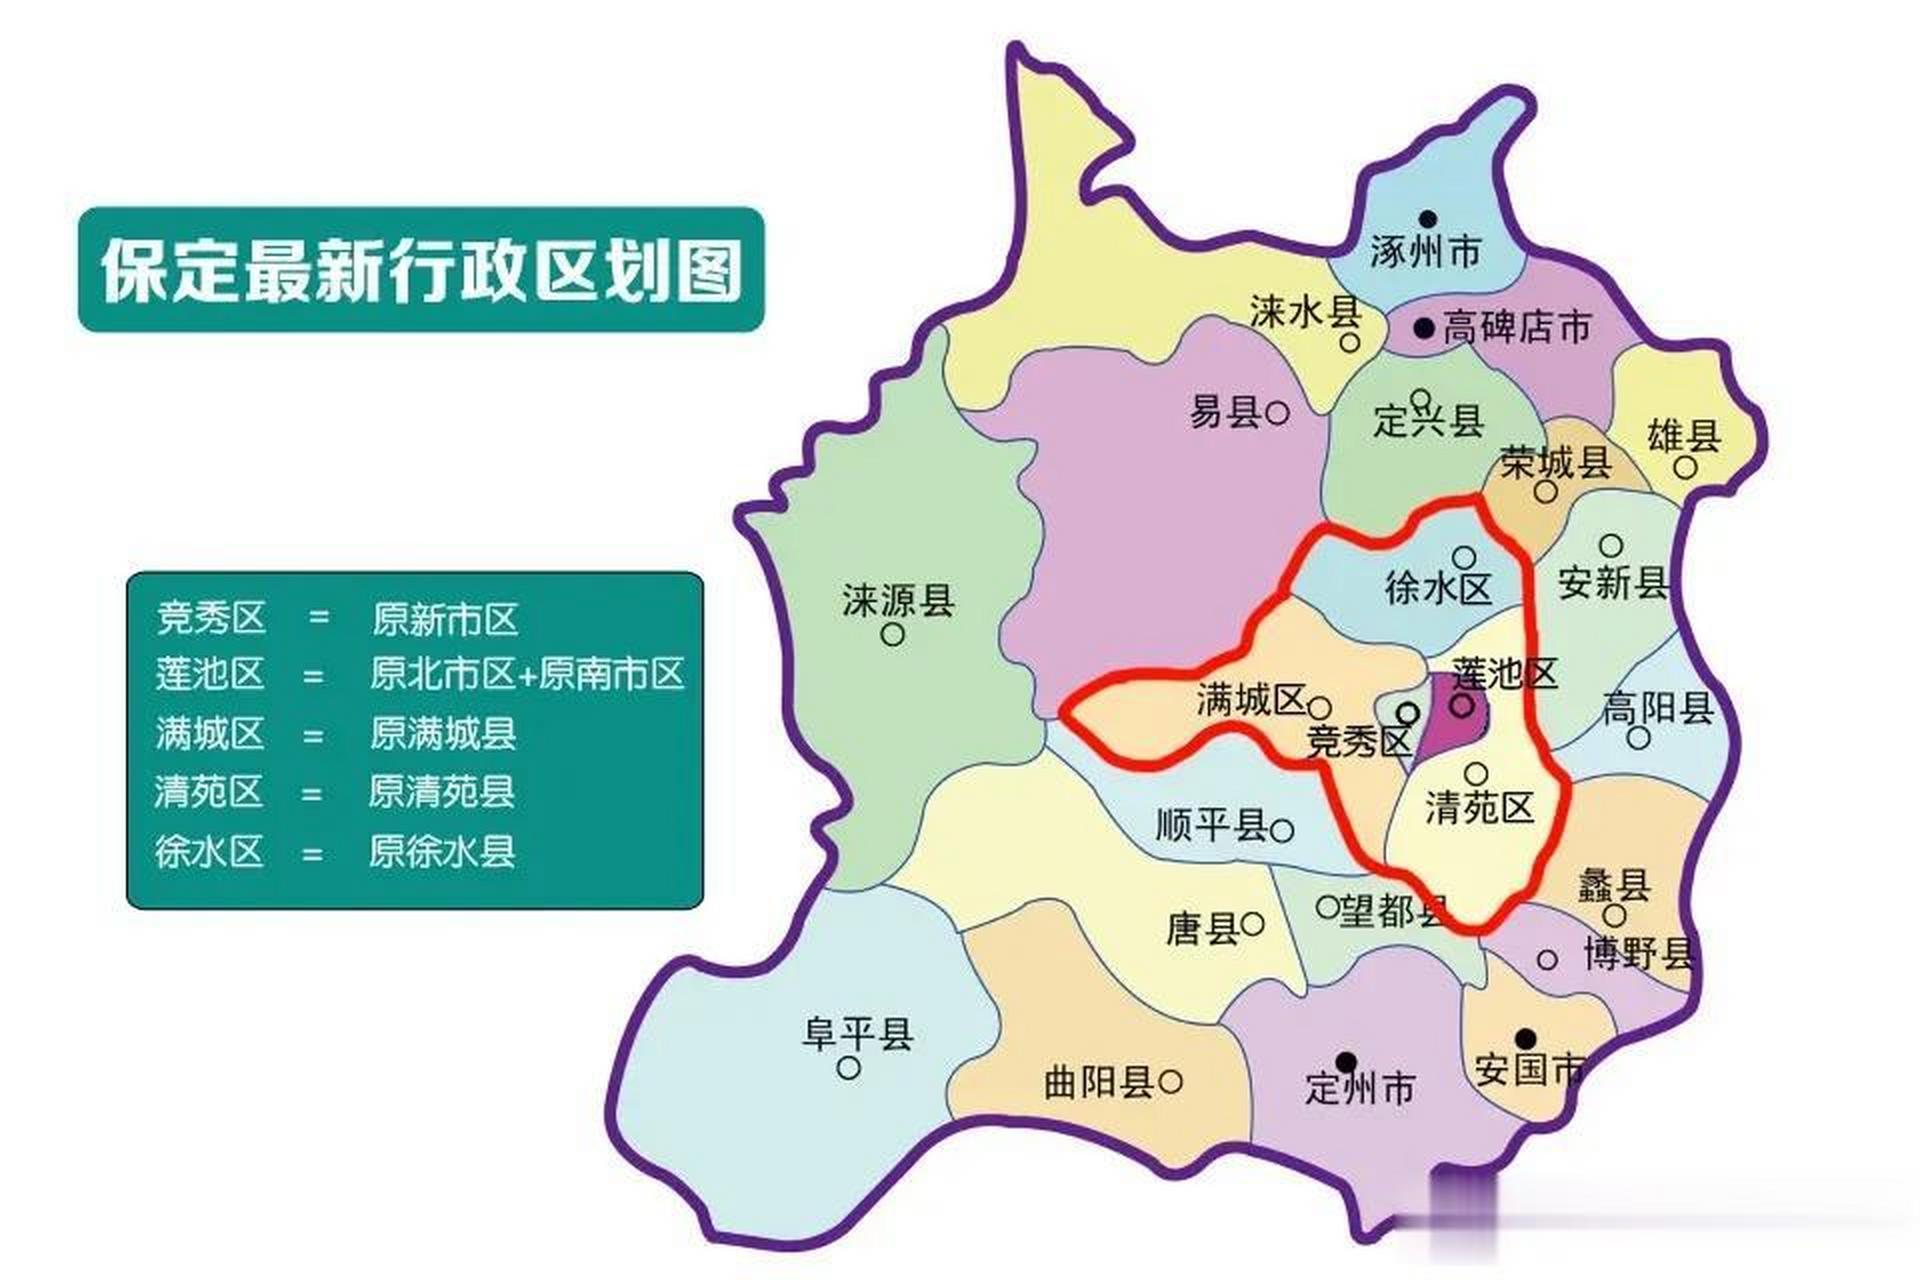 一张河北保定市的行政区划图上,居然出现涿鹿市,作为一个保定人,我